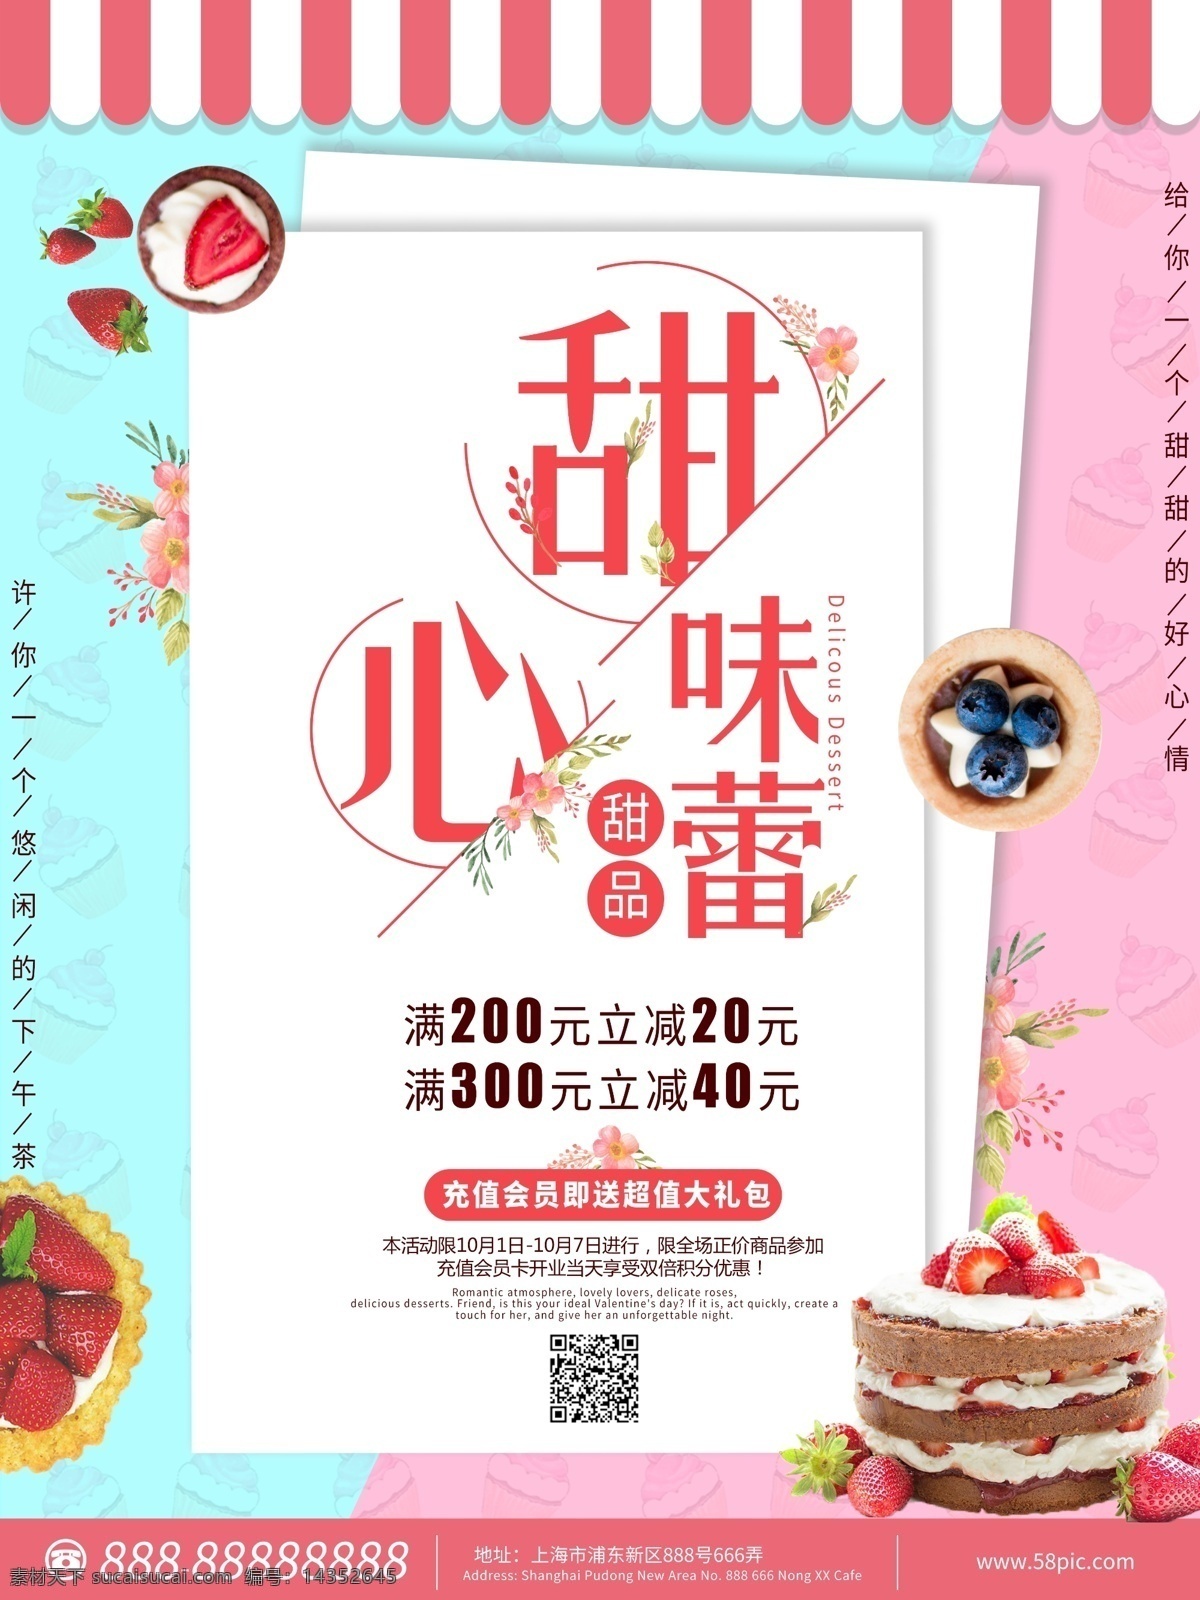 简约 可爱 风 蛋糕 甜品 促销活动 海报 面包 促销 美食 甜点 活动 粉色 草莓